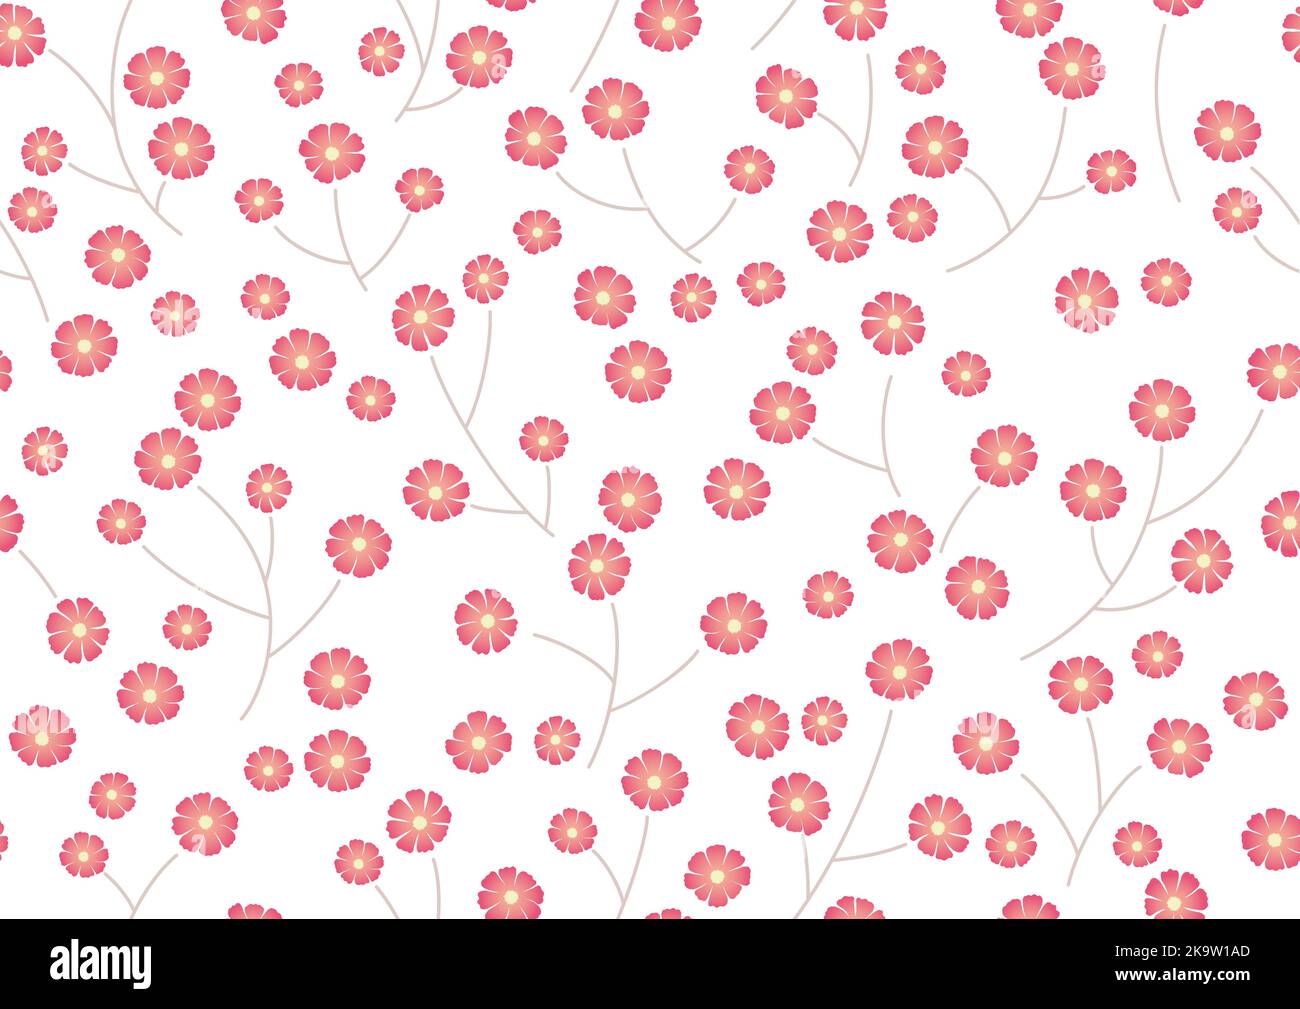 Nahtloser Vektor-Hintergrund mit rosa Blumenmuster auf Einem weißen Hintergrund. Horizontal Und Vertikal Wiederholbar. Stock Vektor